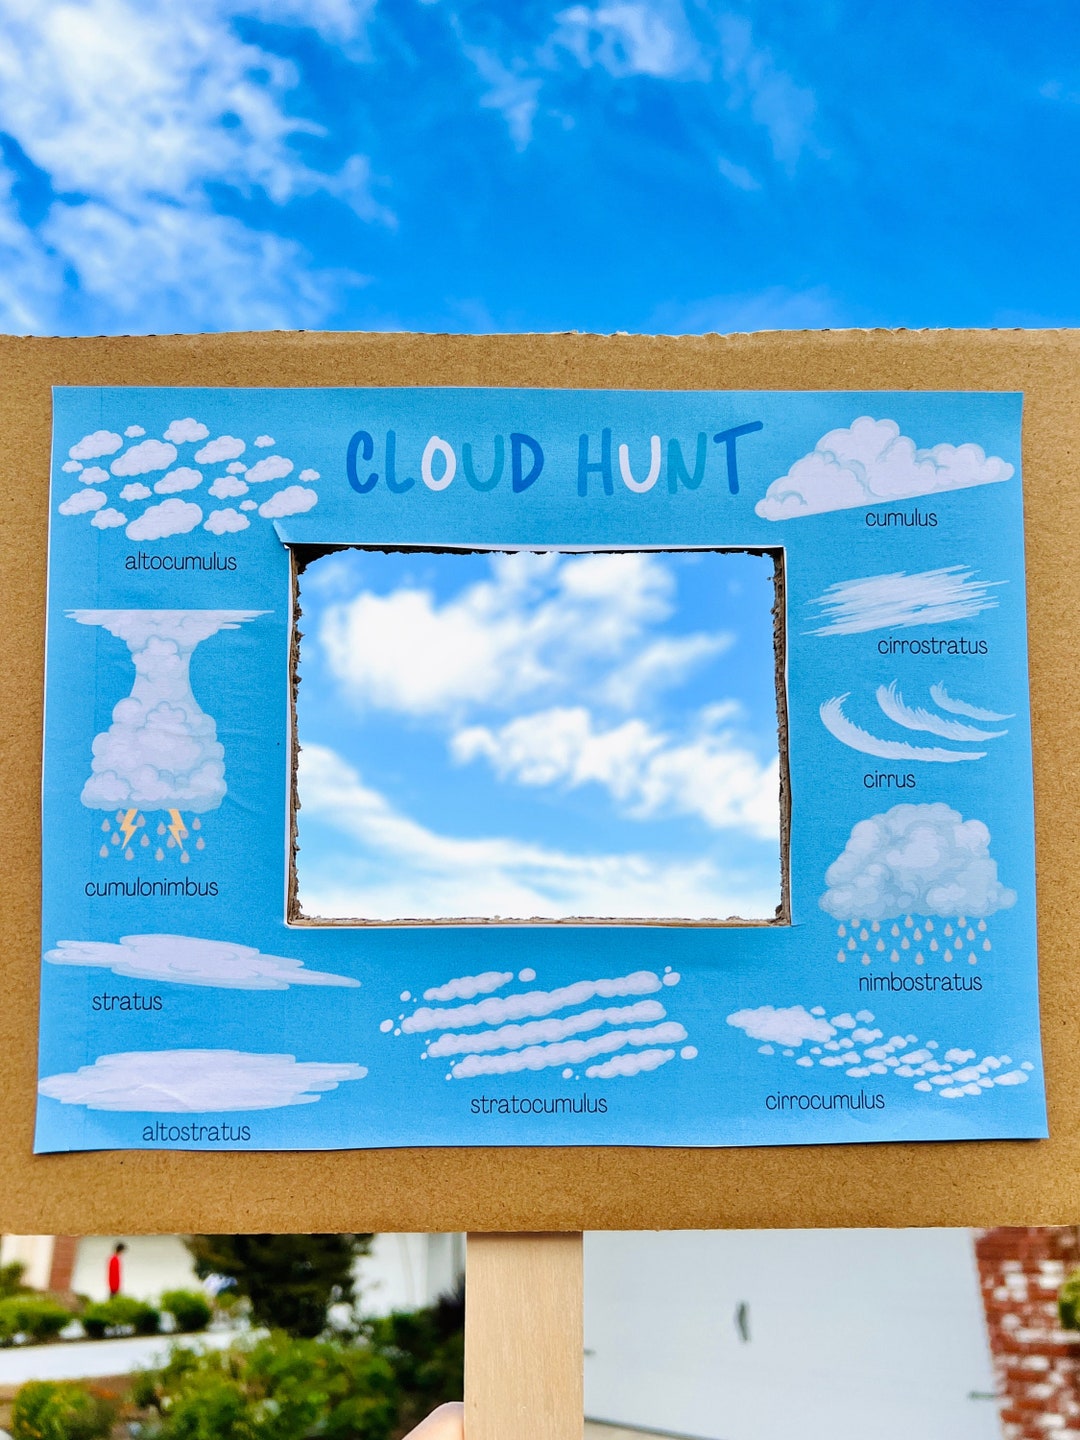 cloud-hunt-printable-cloud-printable-cloud-types-nature-etsy-australia